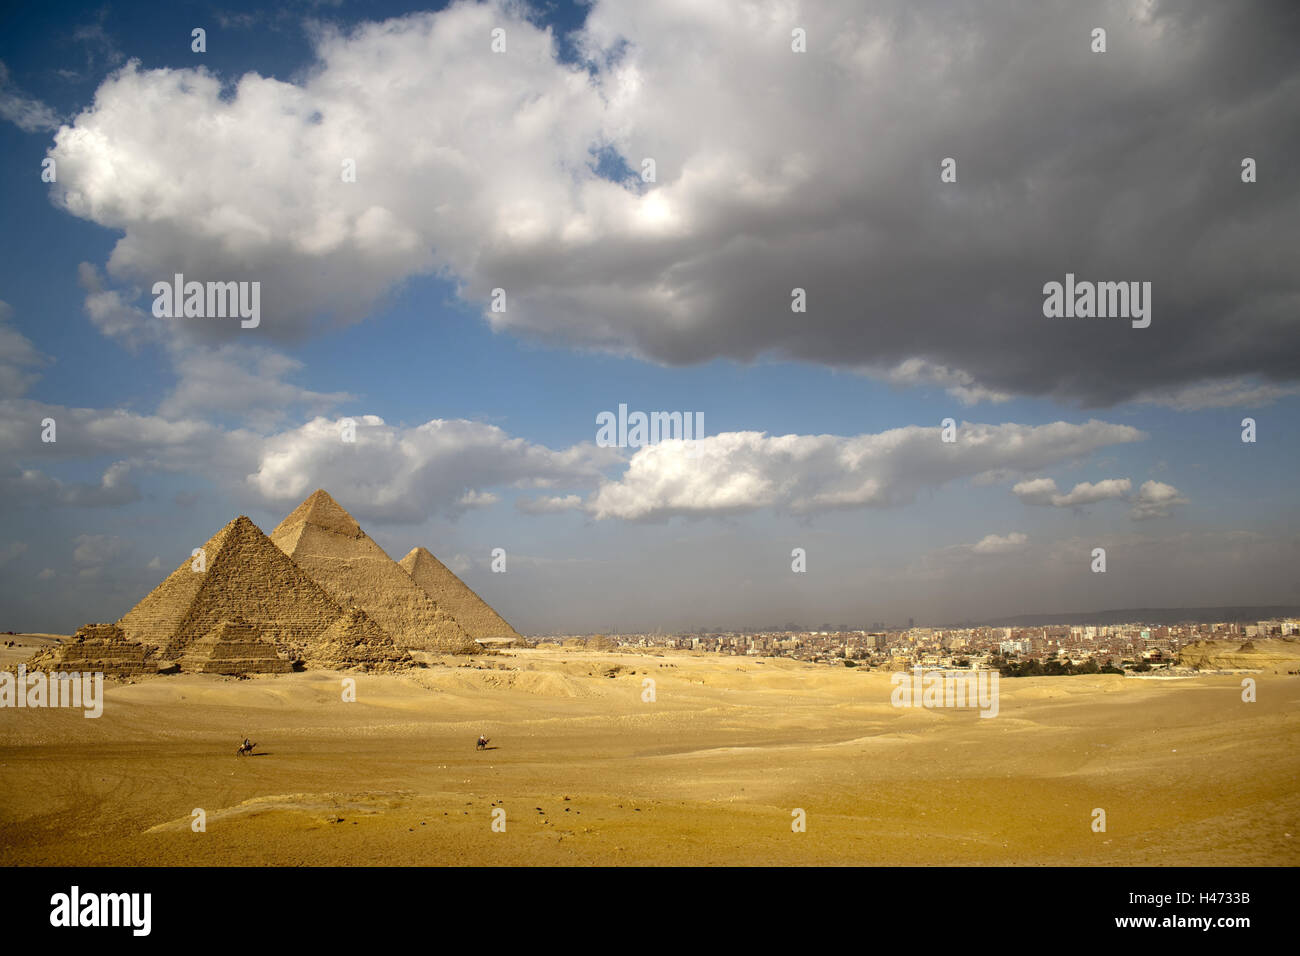 L'Egypte, Le Caire, Gizeh, pyramides, reine des pyramides, Khéphren pyramide, pyramide de Khéops, pyramide, Ripperblackstaff Banque D'Images